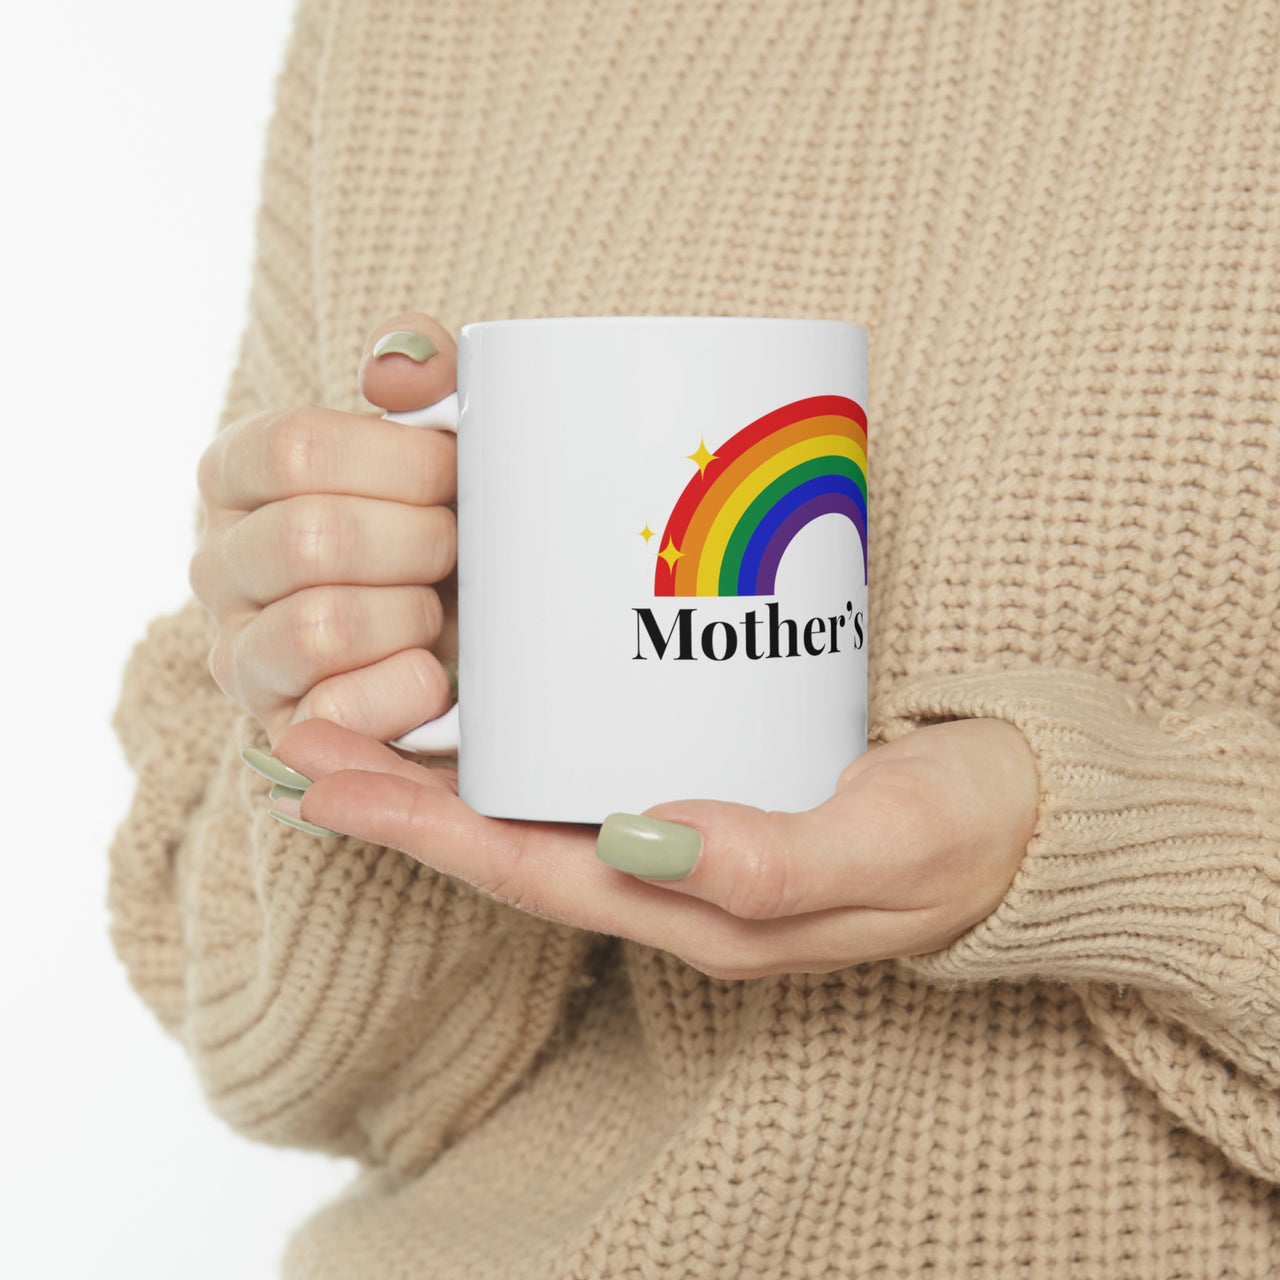 Lgbtq Flag Ceramic Mug  - Mother's Day Printify